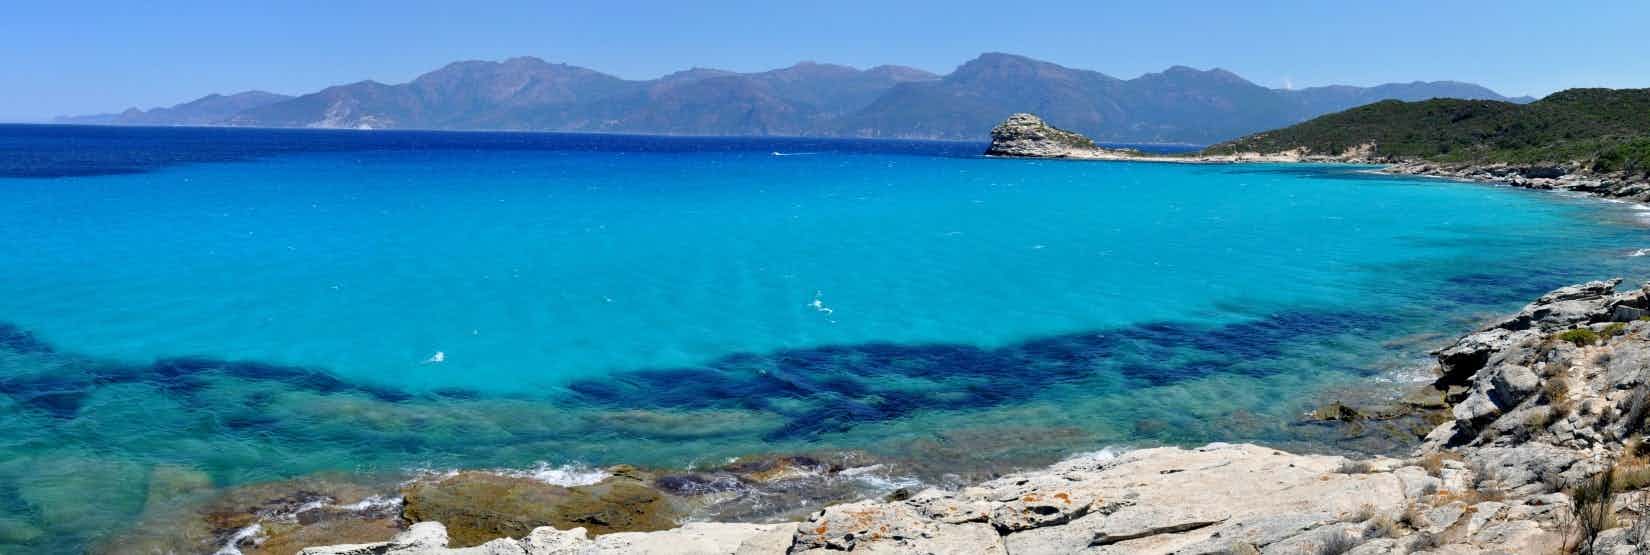 Camping auf Korsika am Meer